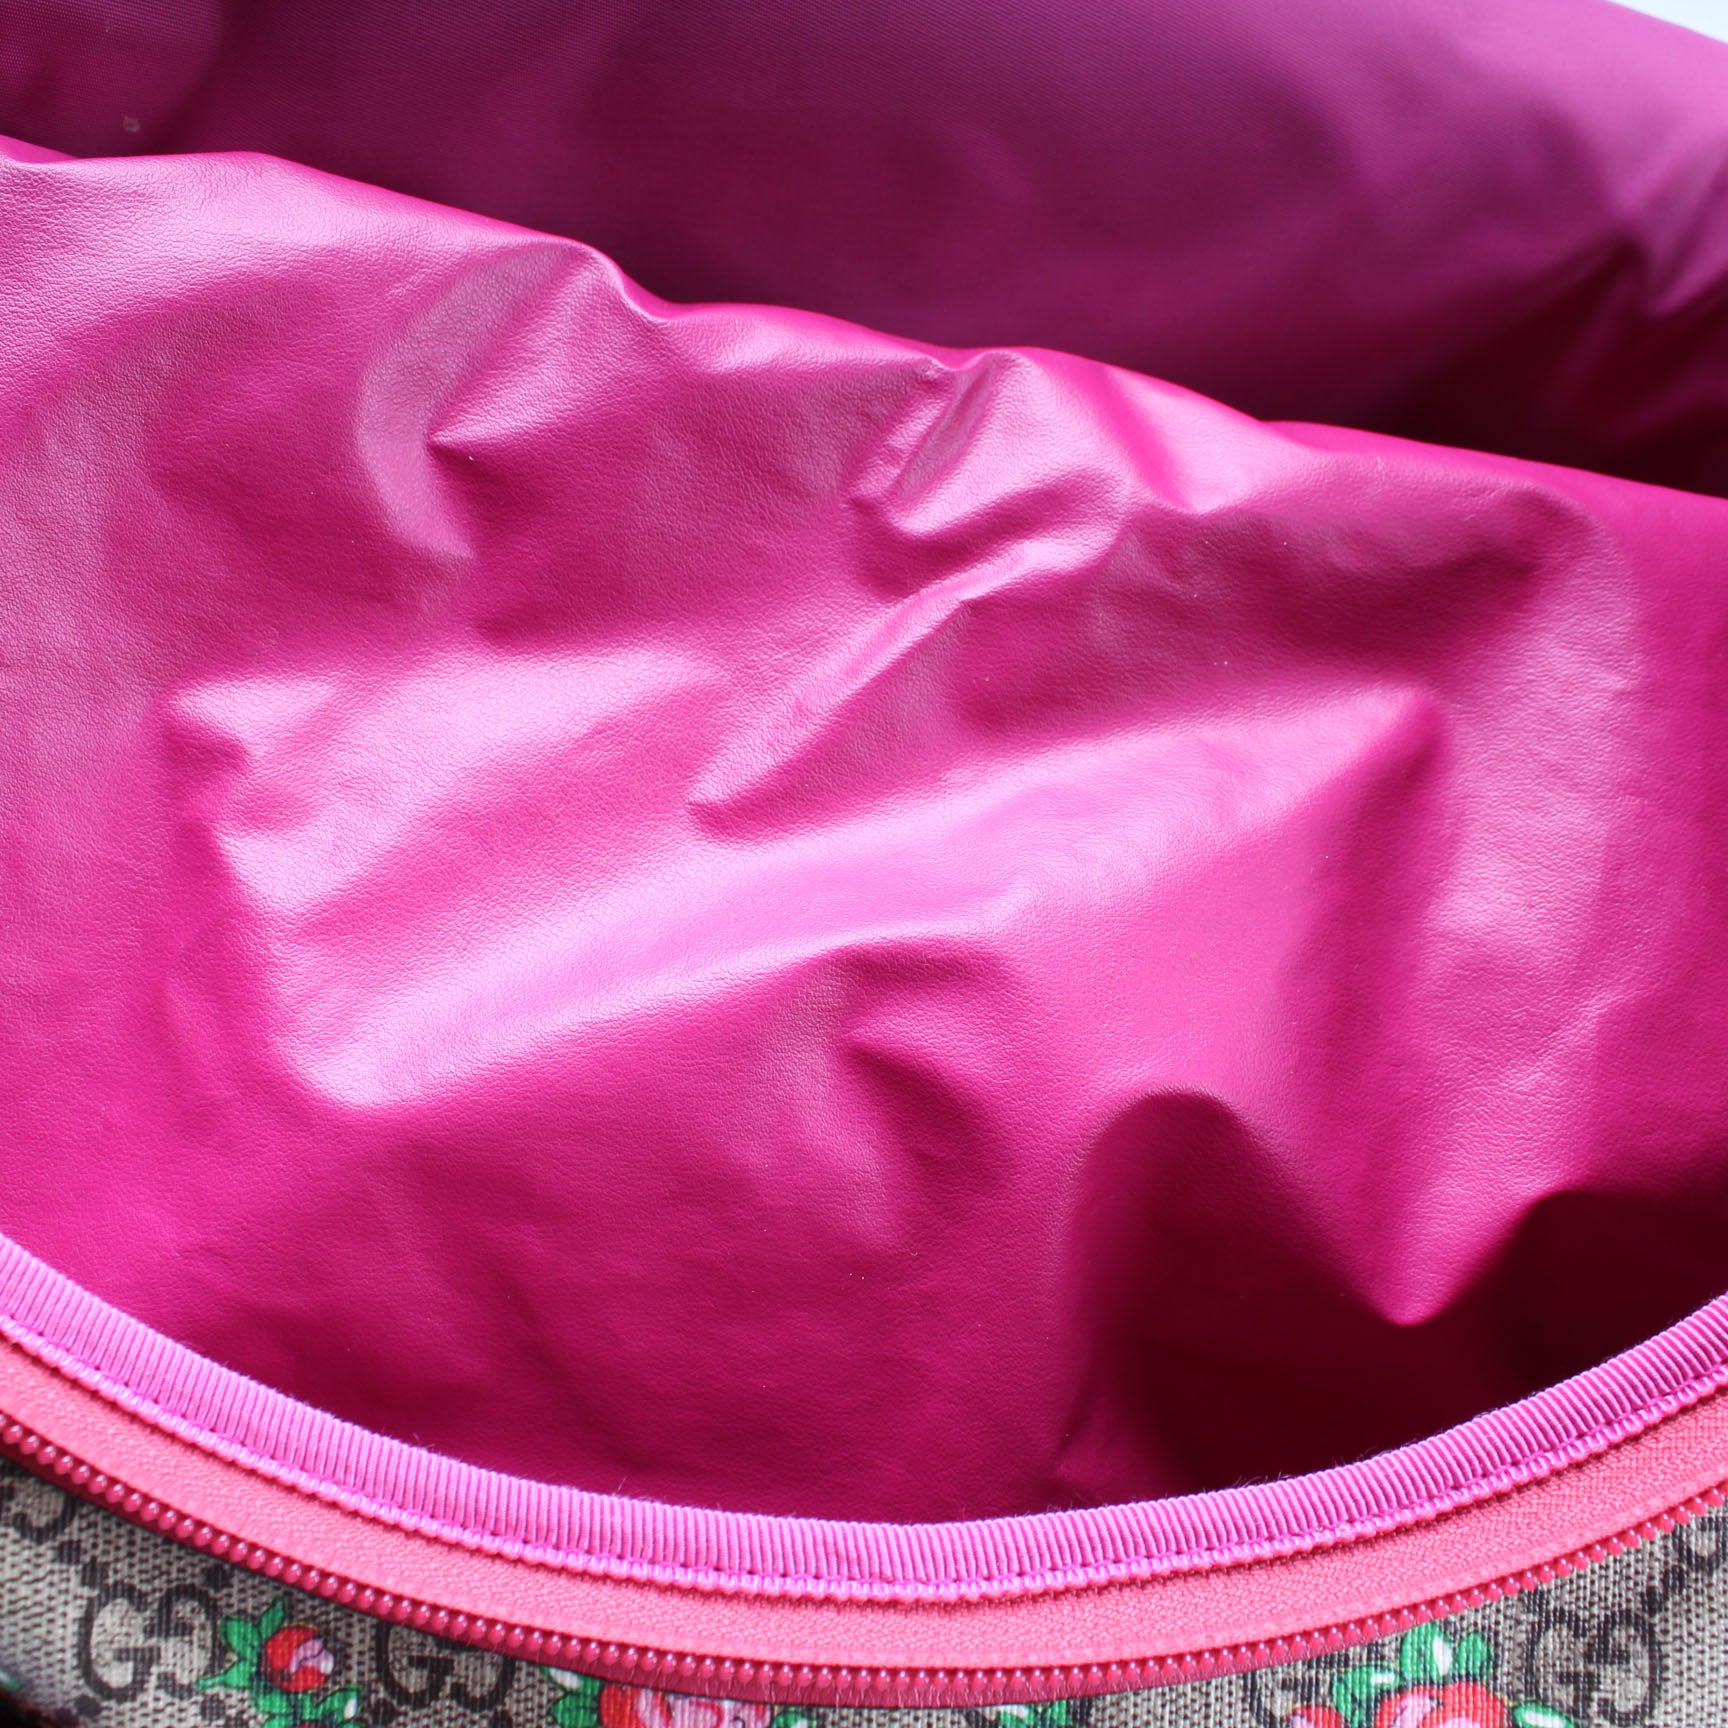 123326 Rose Bud Diaper Bag – Keeks Designer Handbags